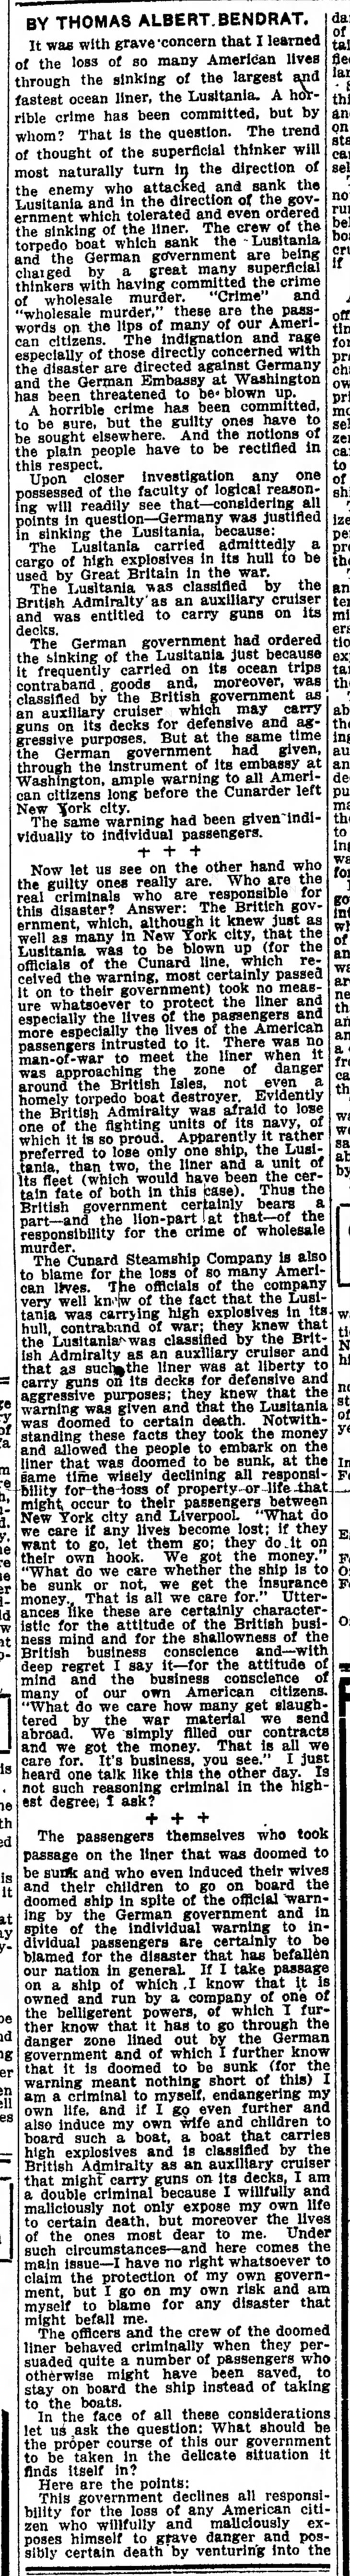 Indianapolis Star May 22 1915 part 1